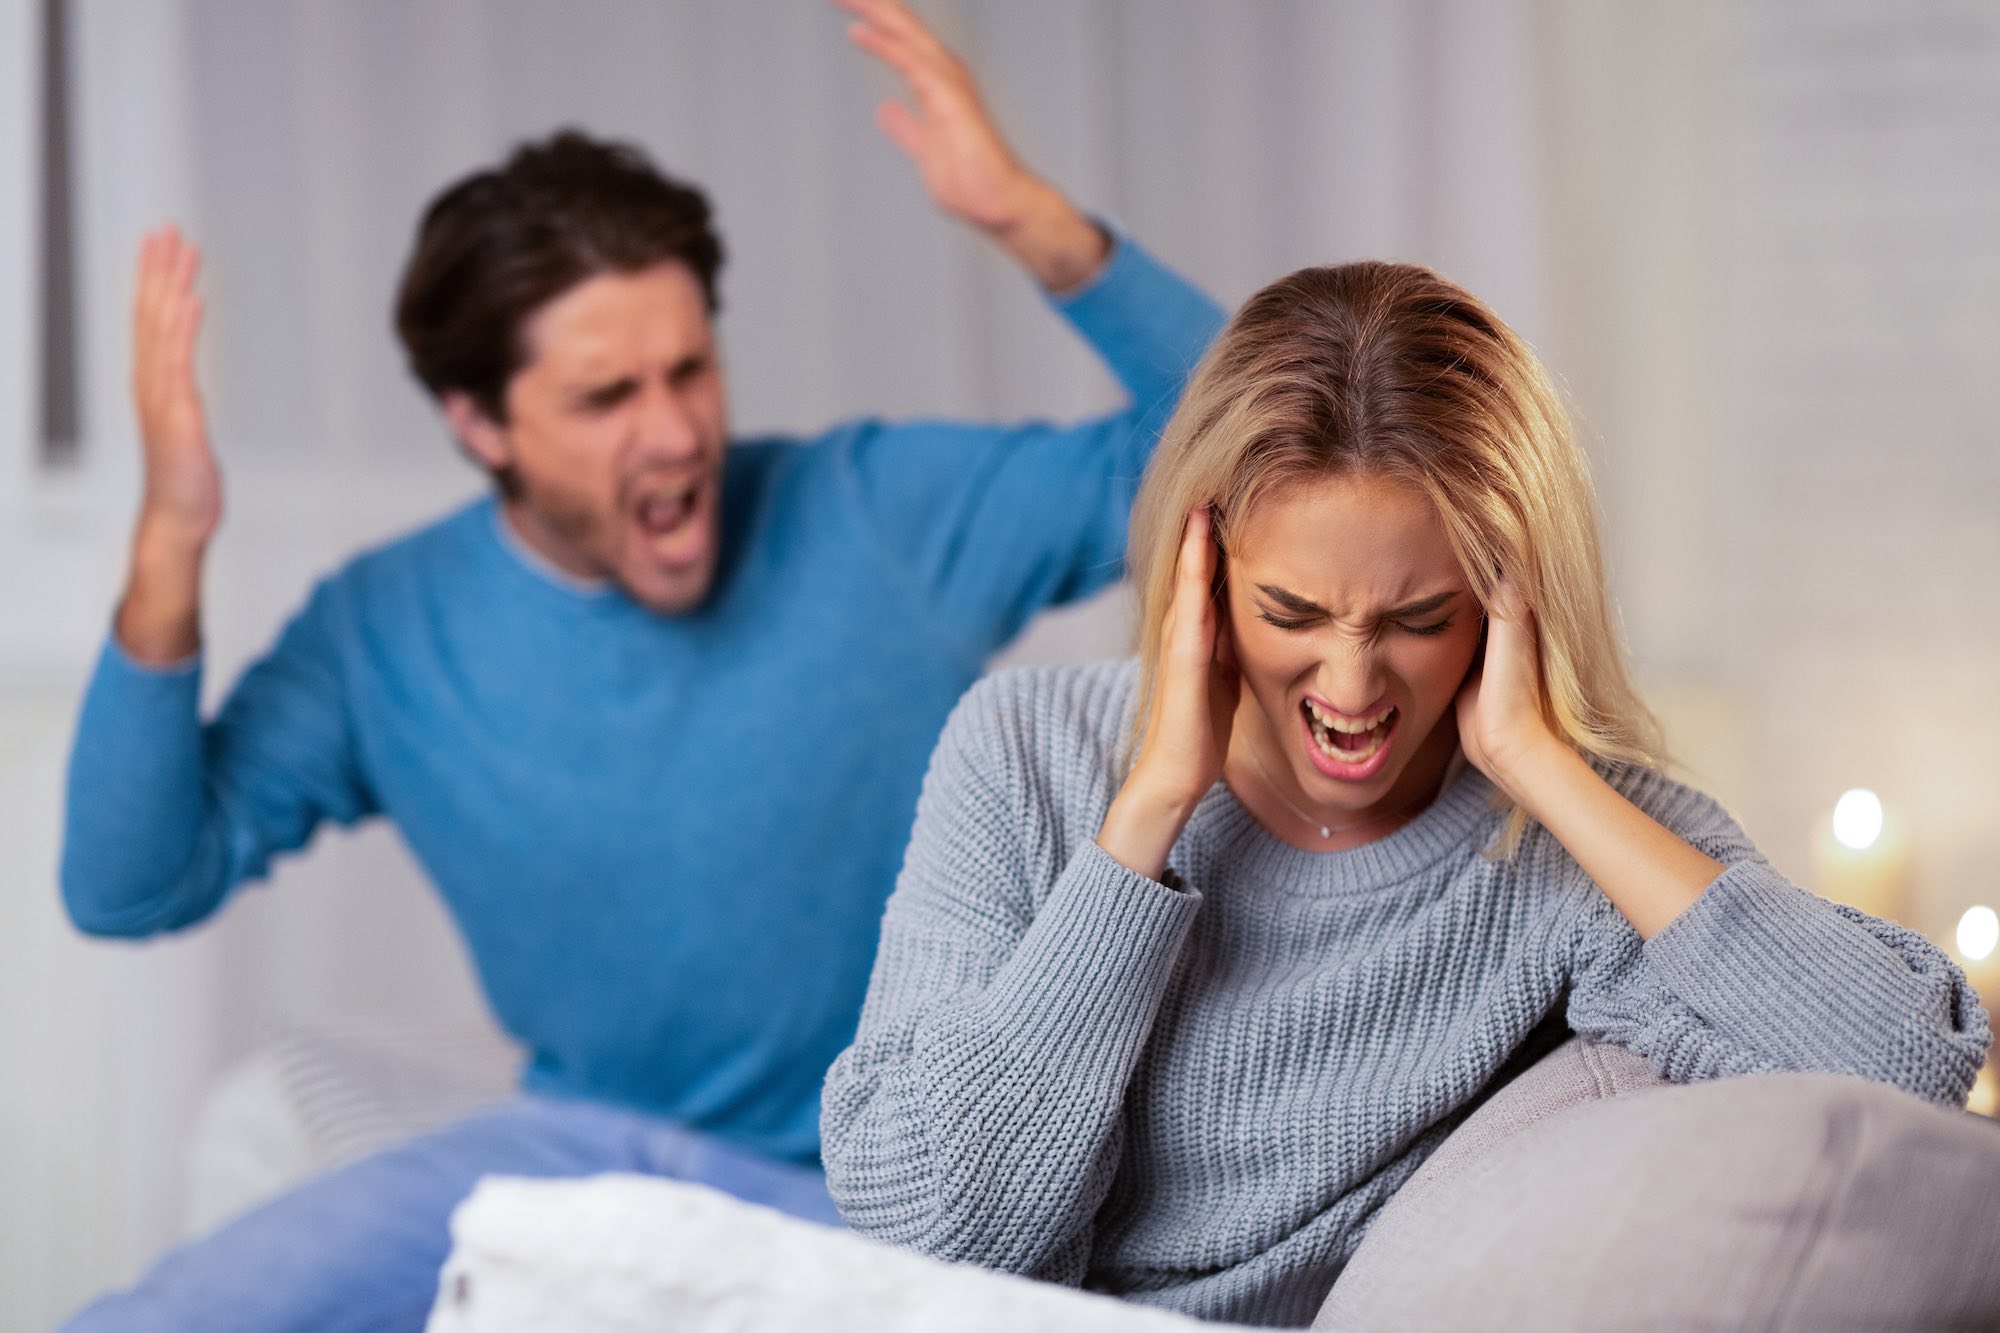 Woman's shock at husband's provide after divorce 1. divorce. 